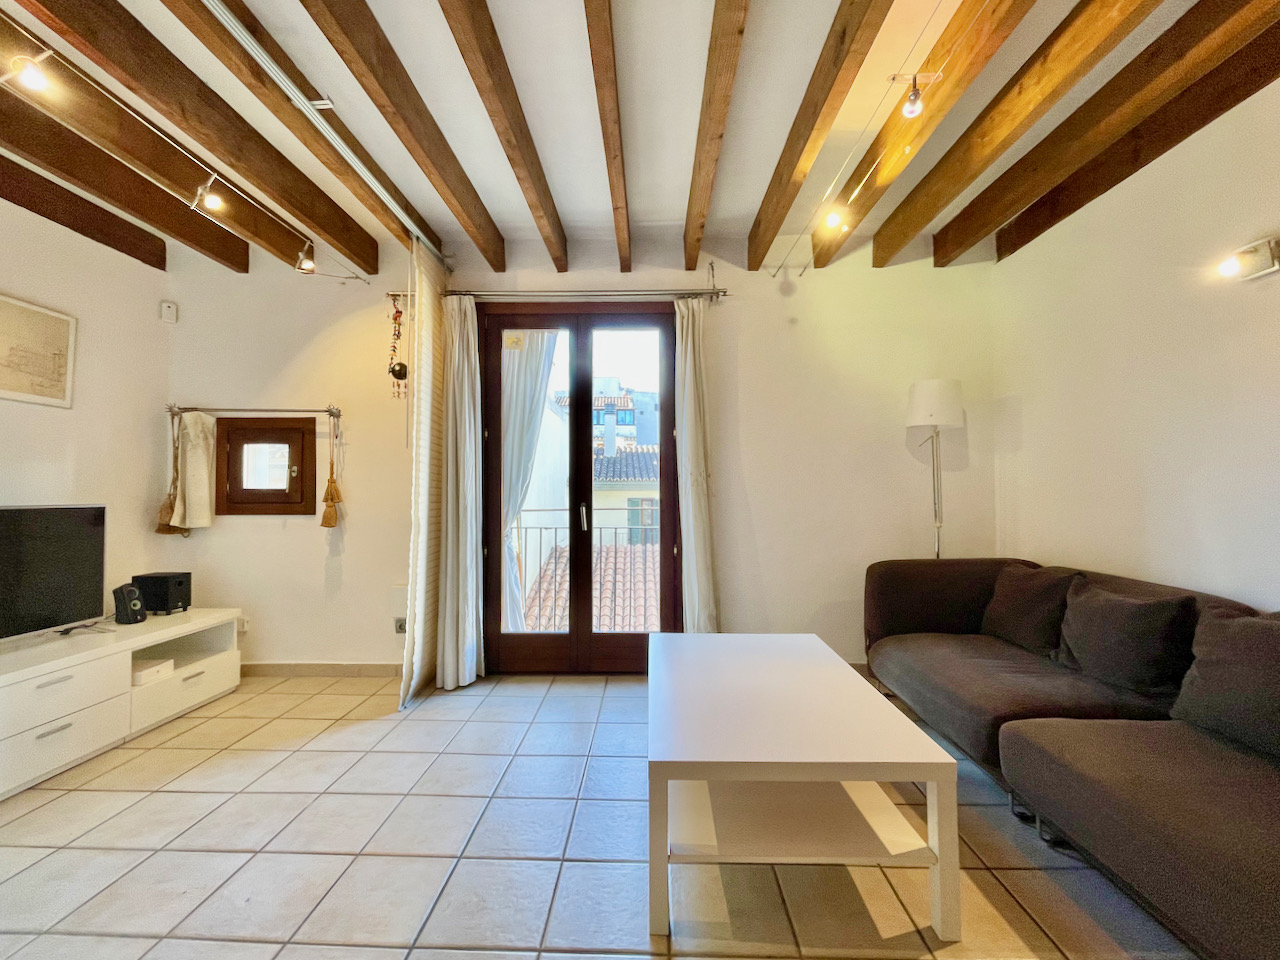 Fantastisch appartement met twee slaapkamers in Sa Gerreria, het oude centrum van Palma.